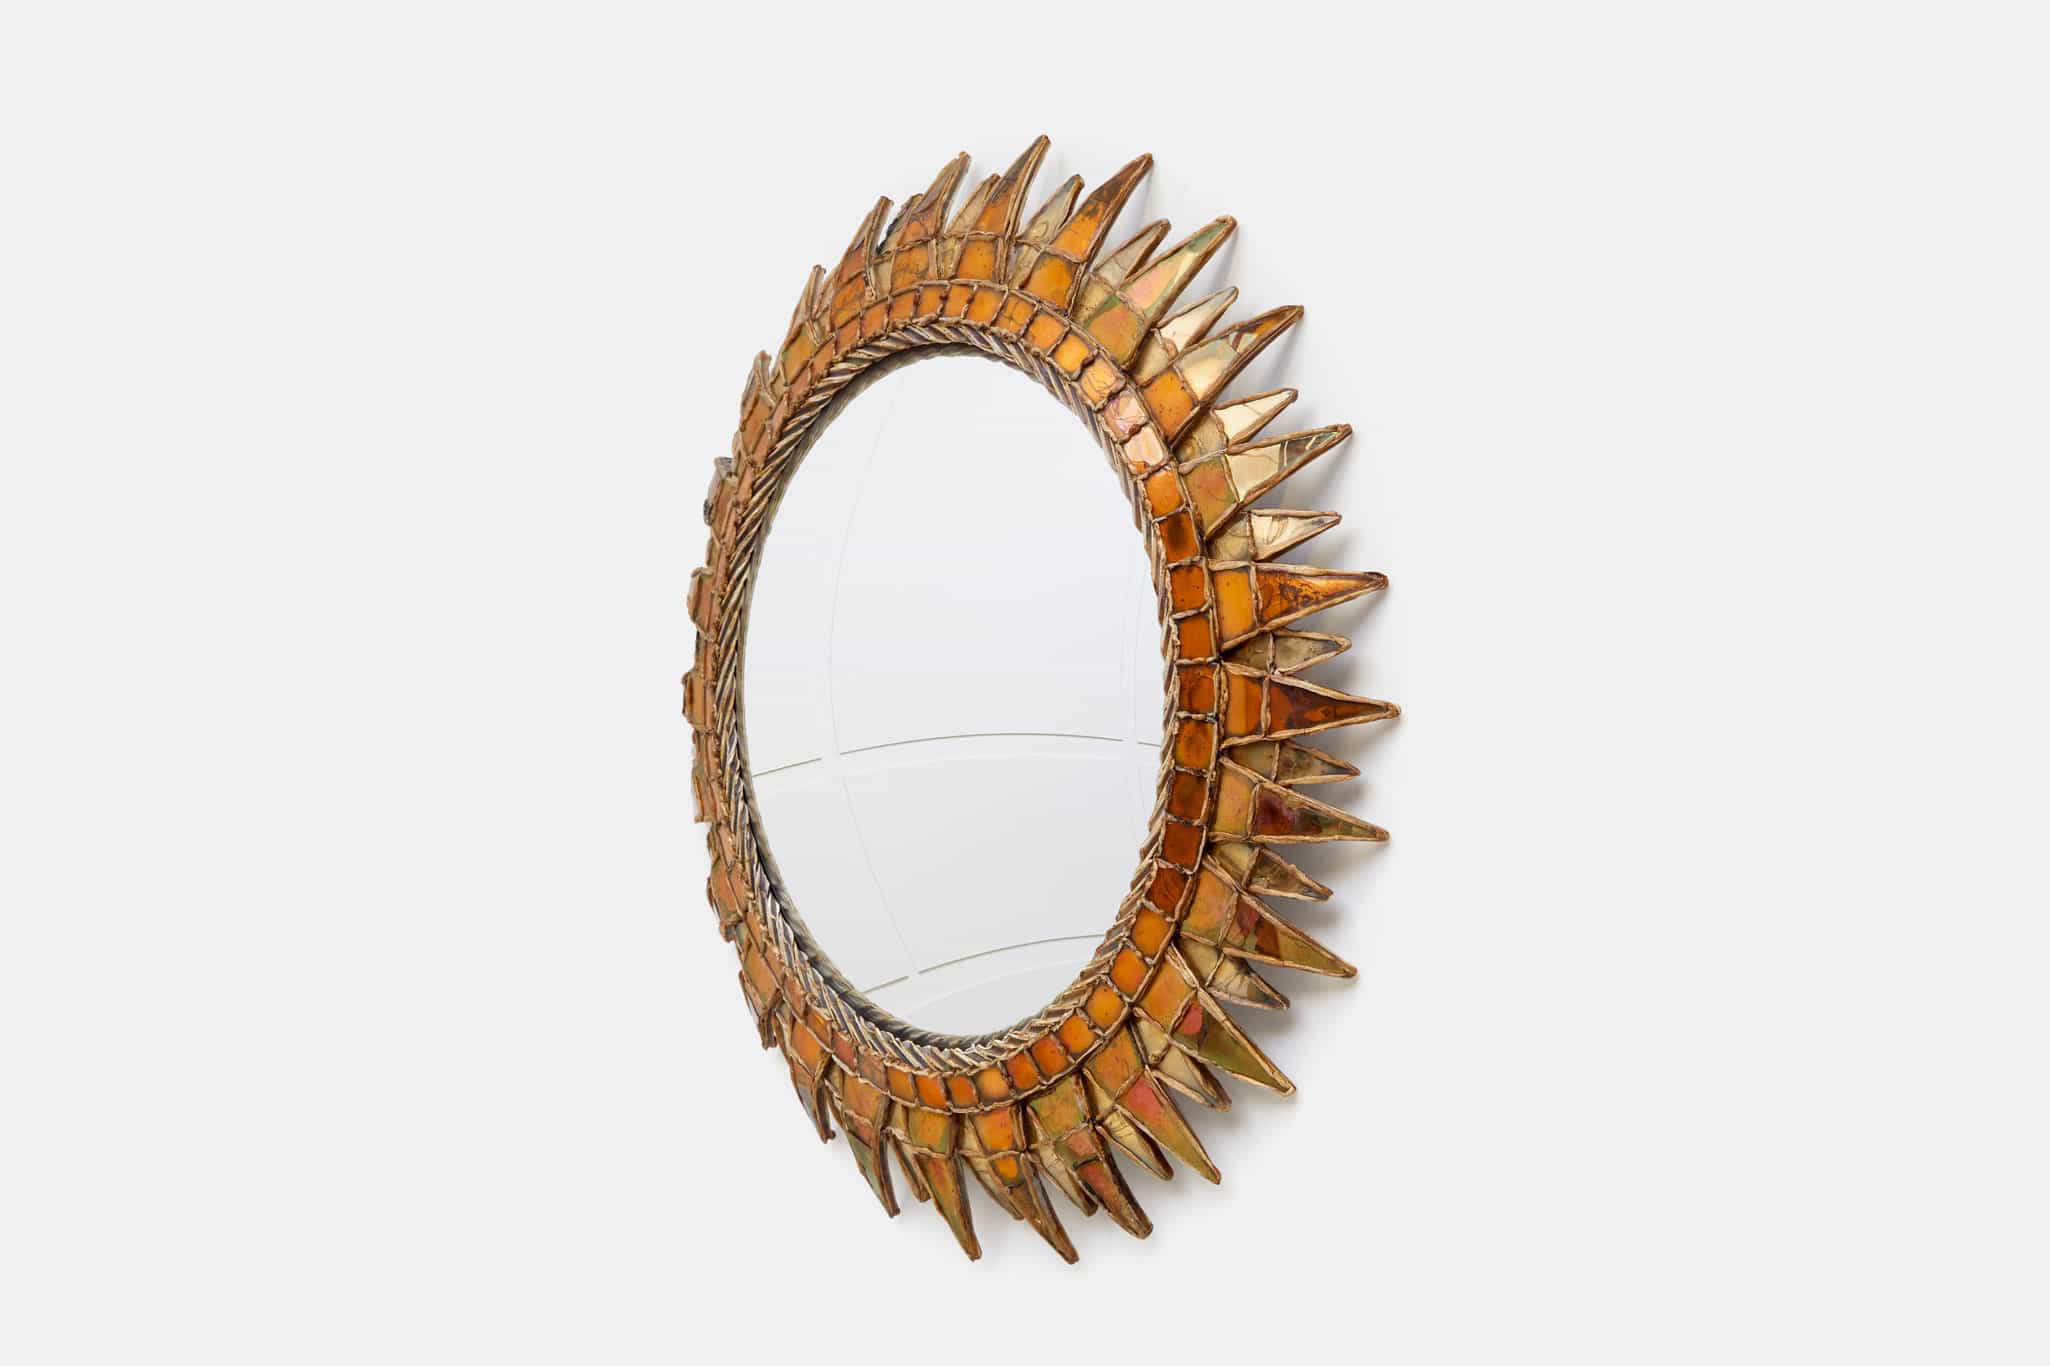 Line Vautrin, Gilded and orange “Soleil à pointes n°3” mirror, vue 02